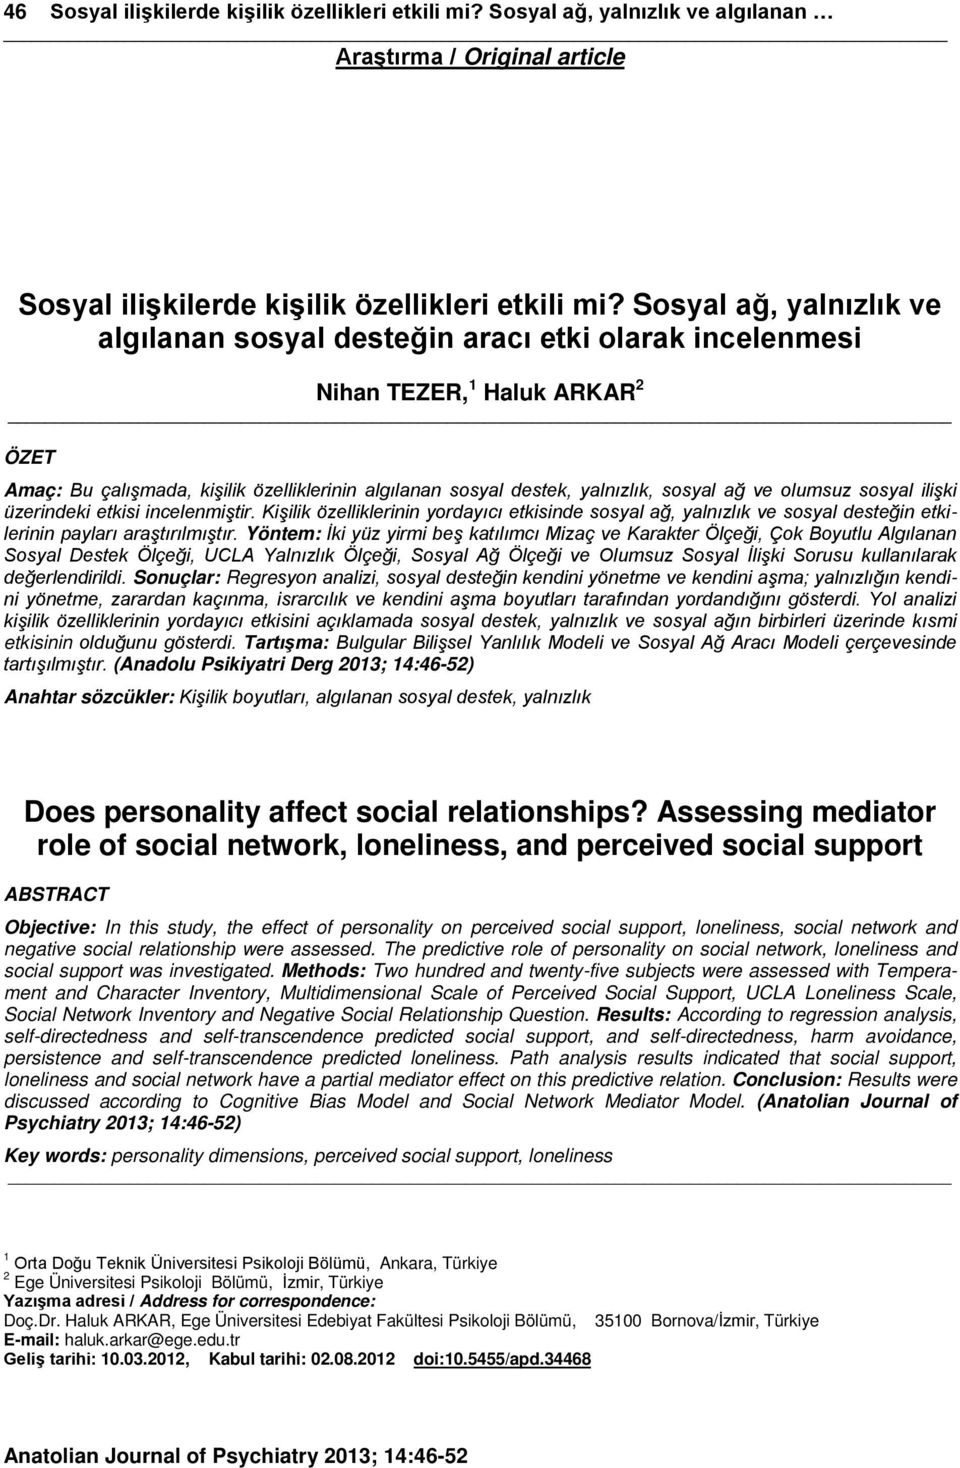 ağ ve olumsuz sosyal ilişki üzerindeki etkisi incelenmiştir. Kişilik özelliklerinin yordayıcı etkisinde sosyal ağ, yalnızlık ve sosyal desteğin etkilerinin payları araştırılmıştır.